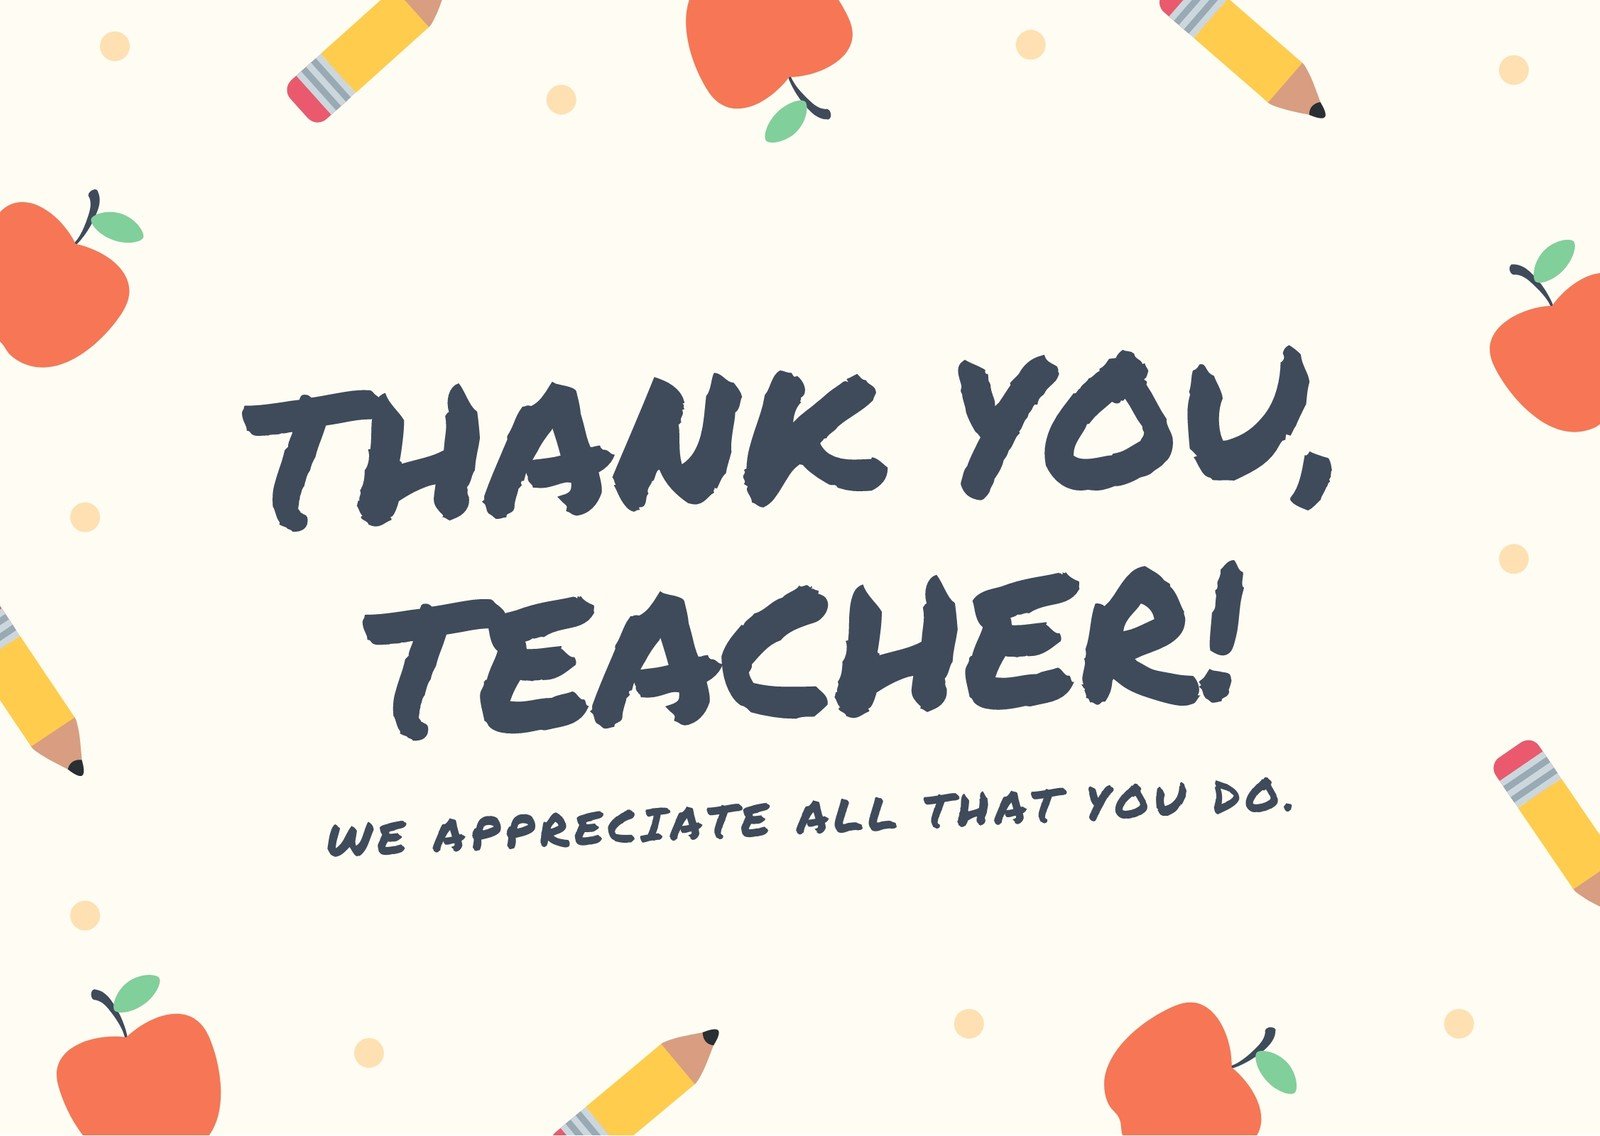 Beige School Teacher Thank You Card - Templates by Canva Intended For Thank You Card For Teacher Template